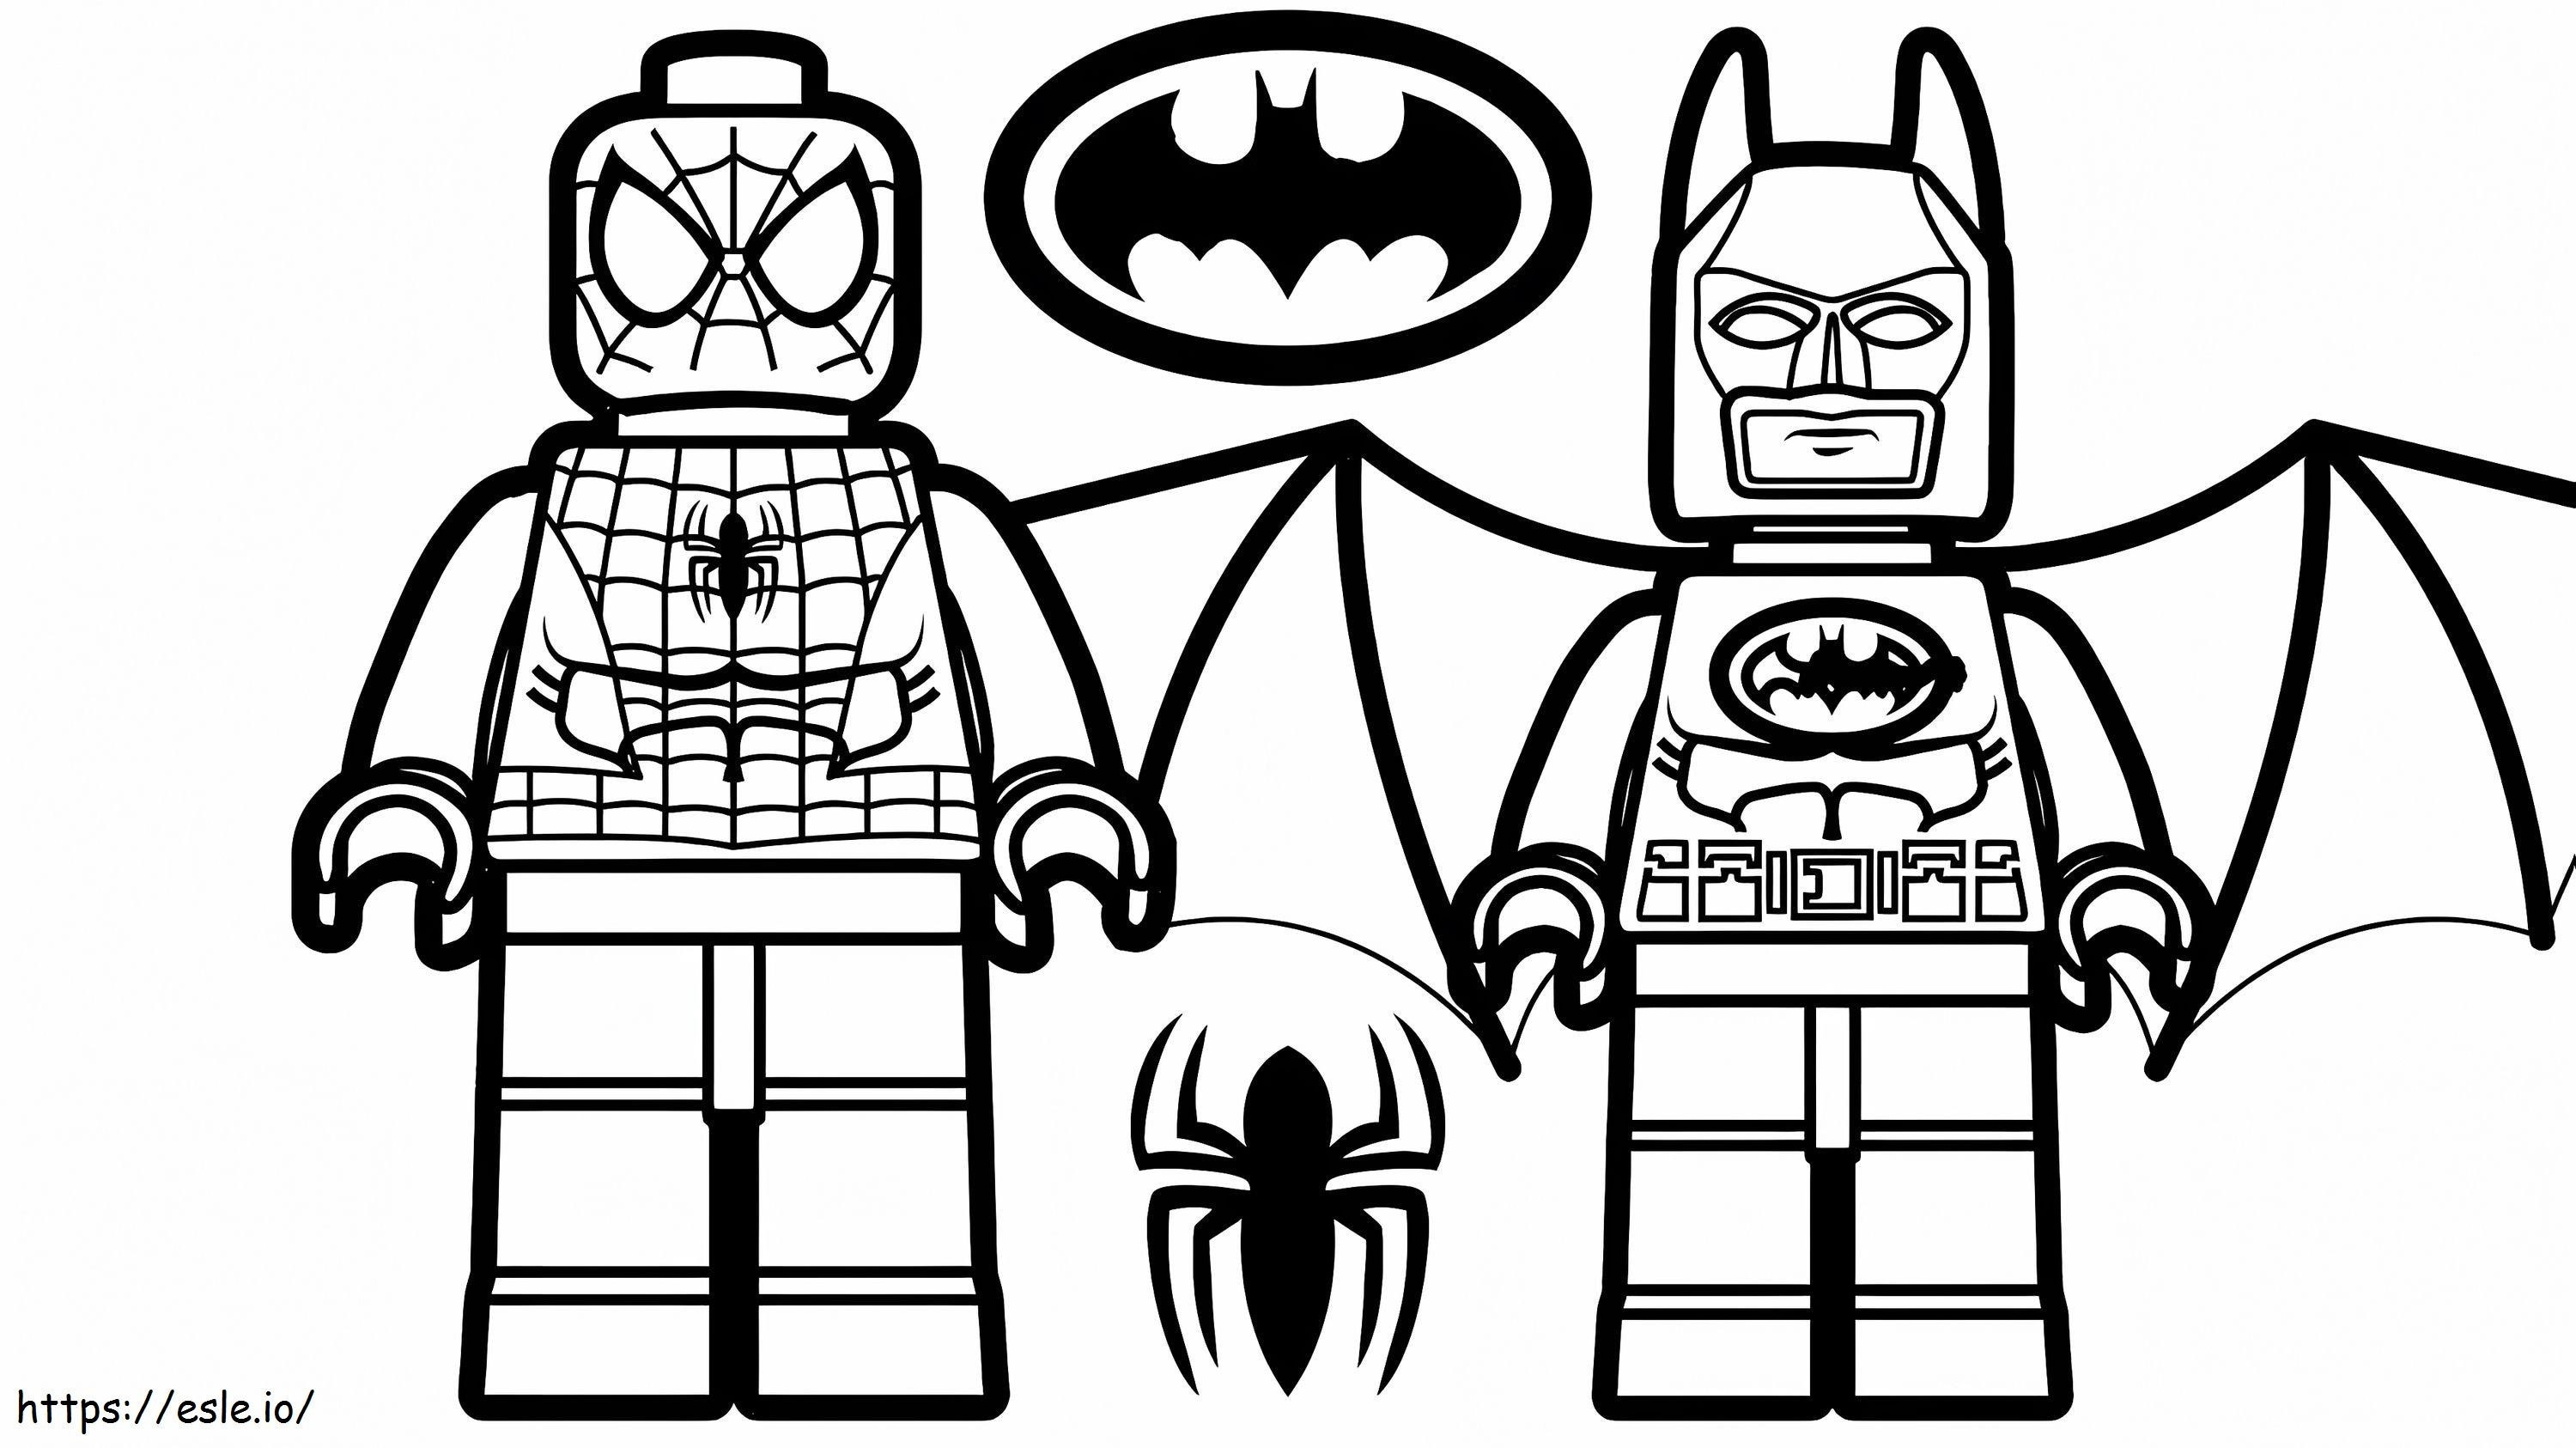 1532141570 Lego Spiderman en Lego Batman A4 E1600348956736 kleurplaat kleurplaat